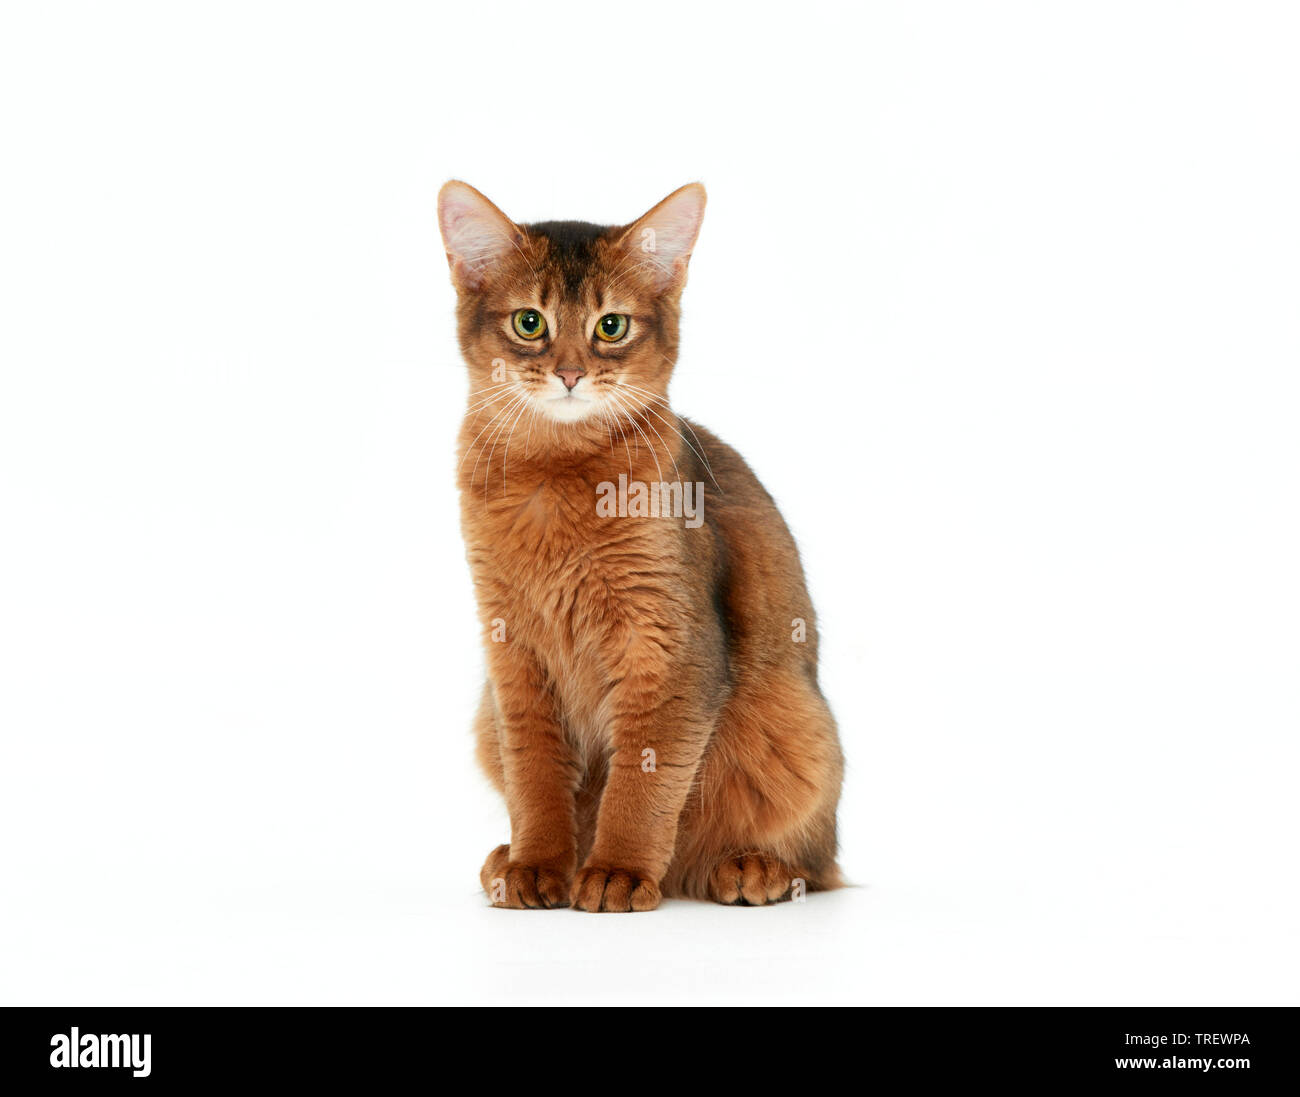 Gatto somalo. Kitten seduta, come si vede in testa-a. Studio Immagine contro uno sfondo bianco Foto Stock